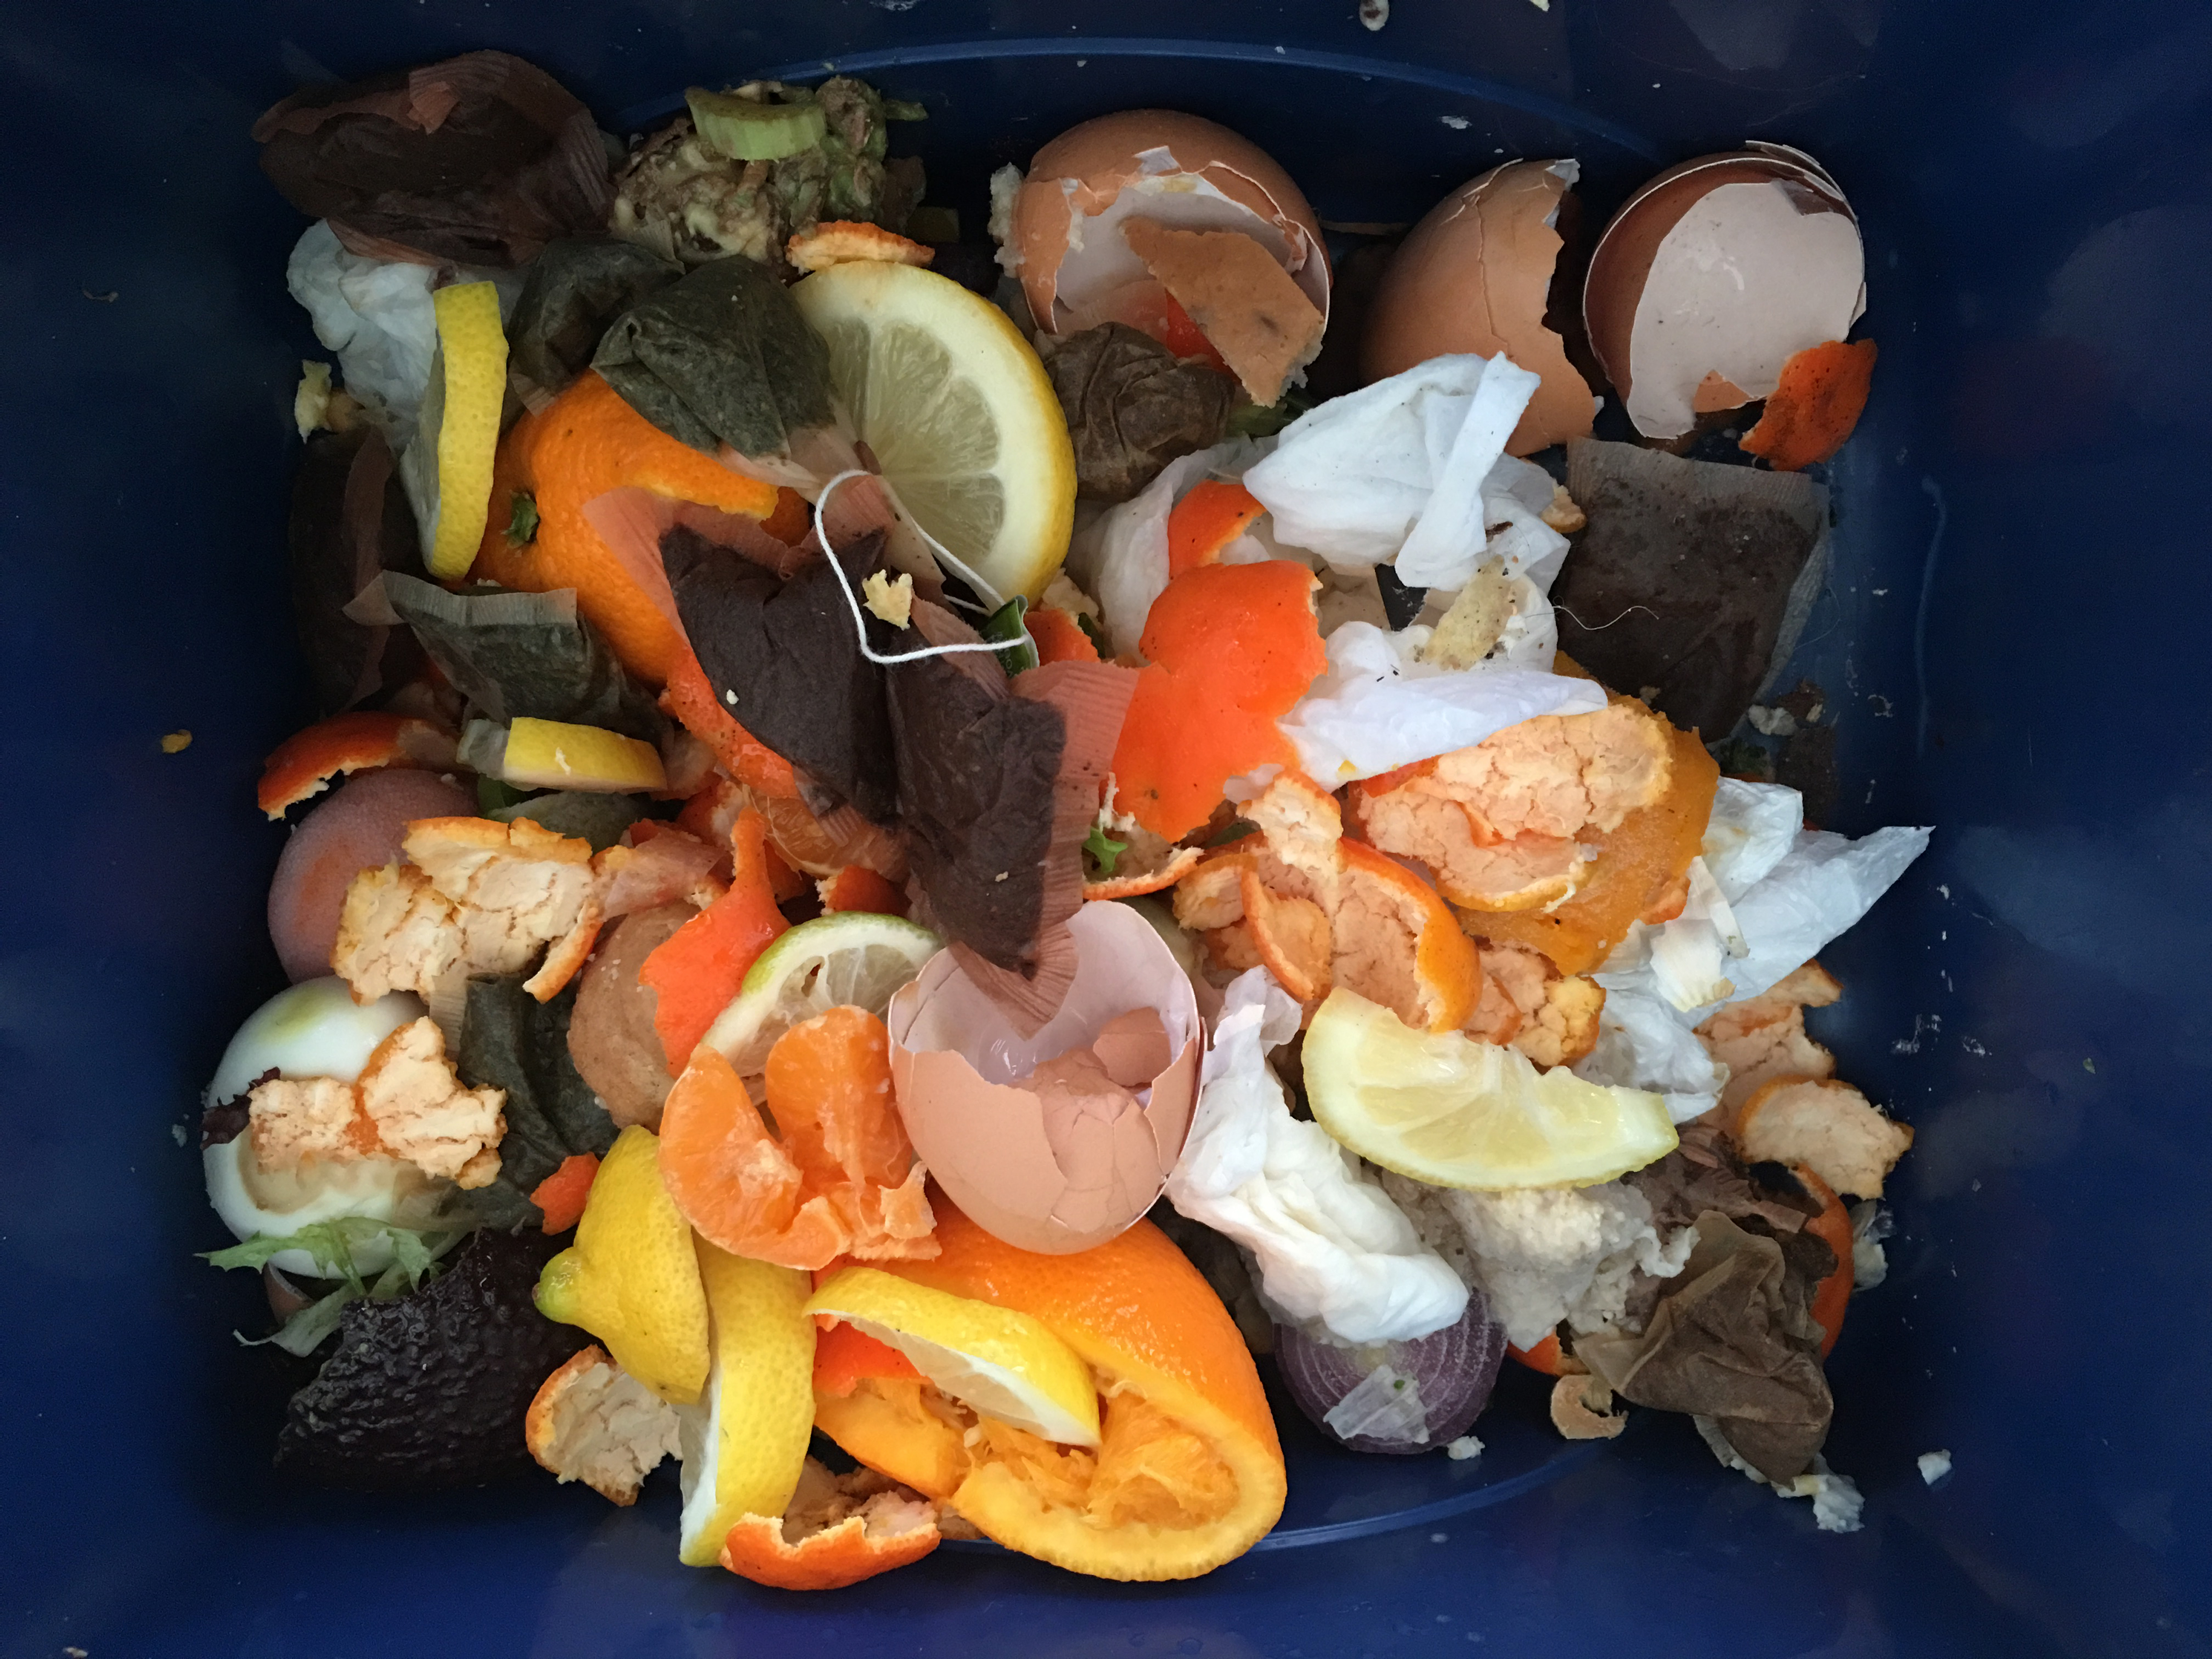  Пищевые и садовые отходы